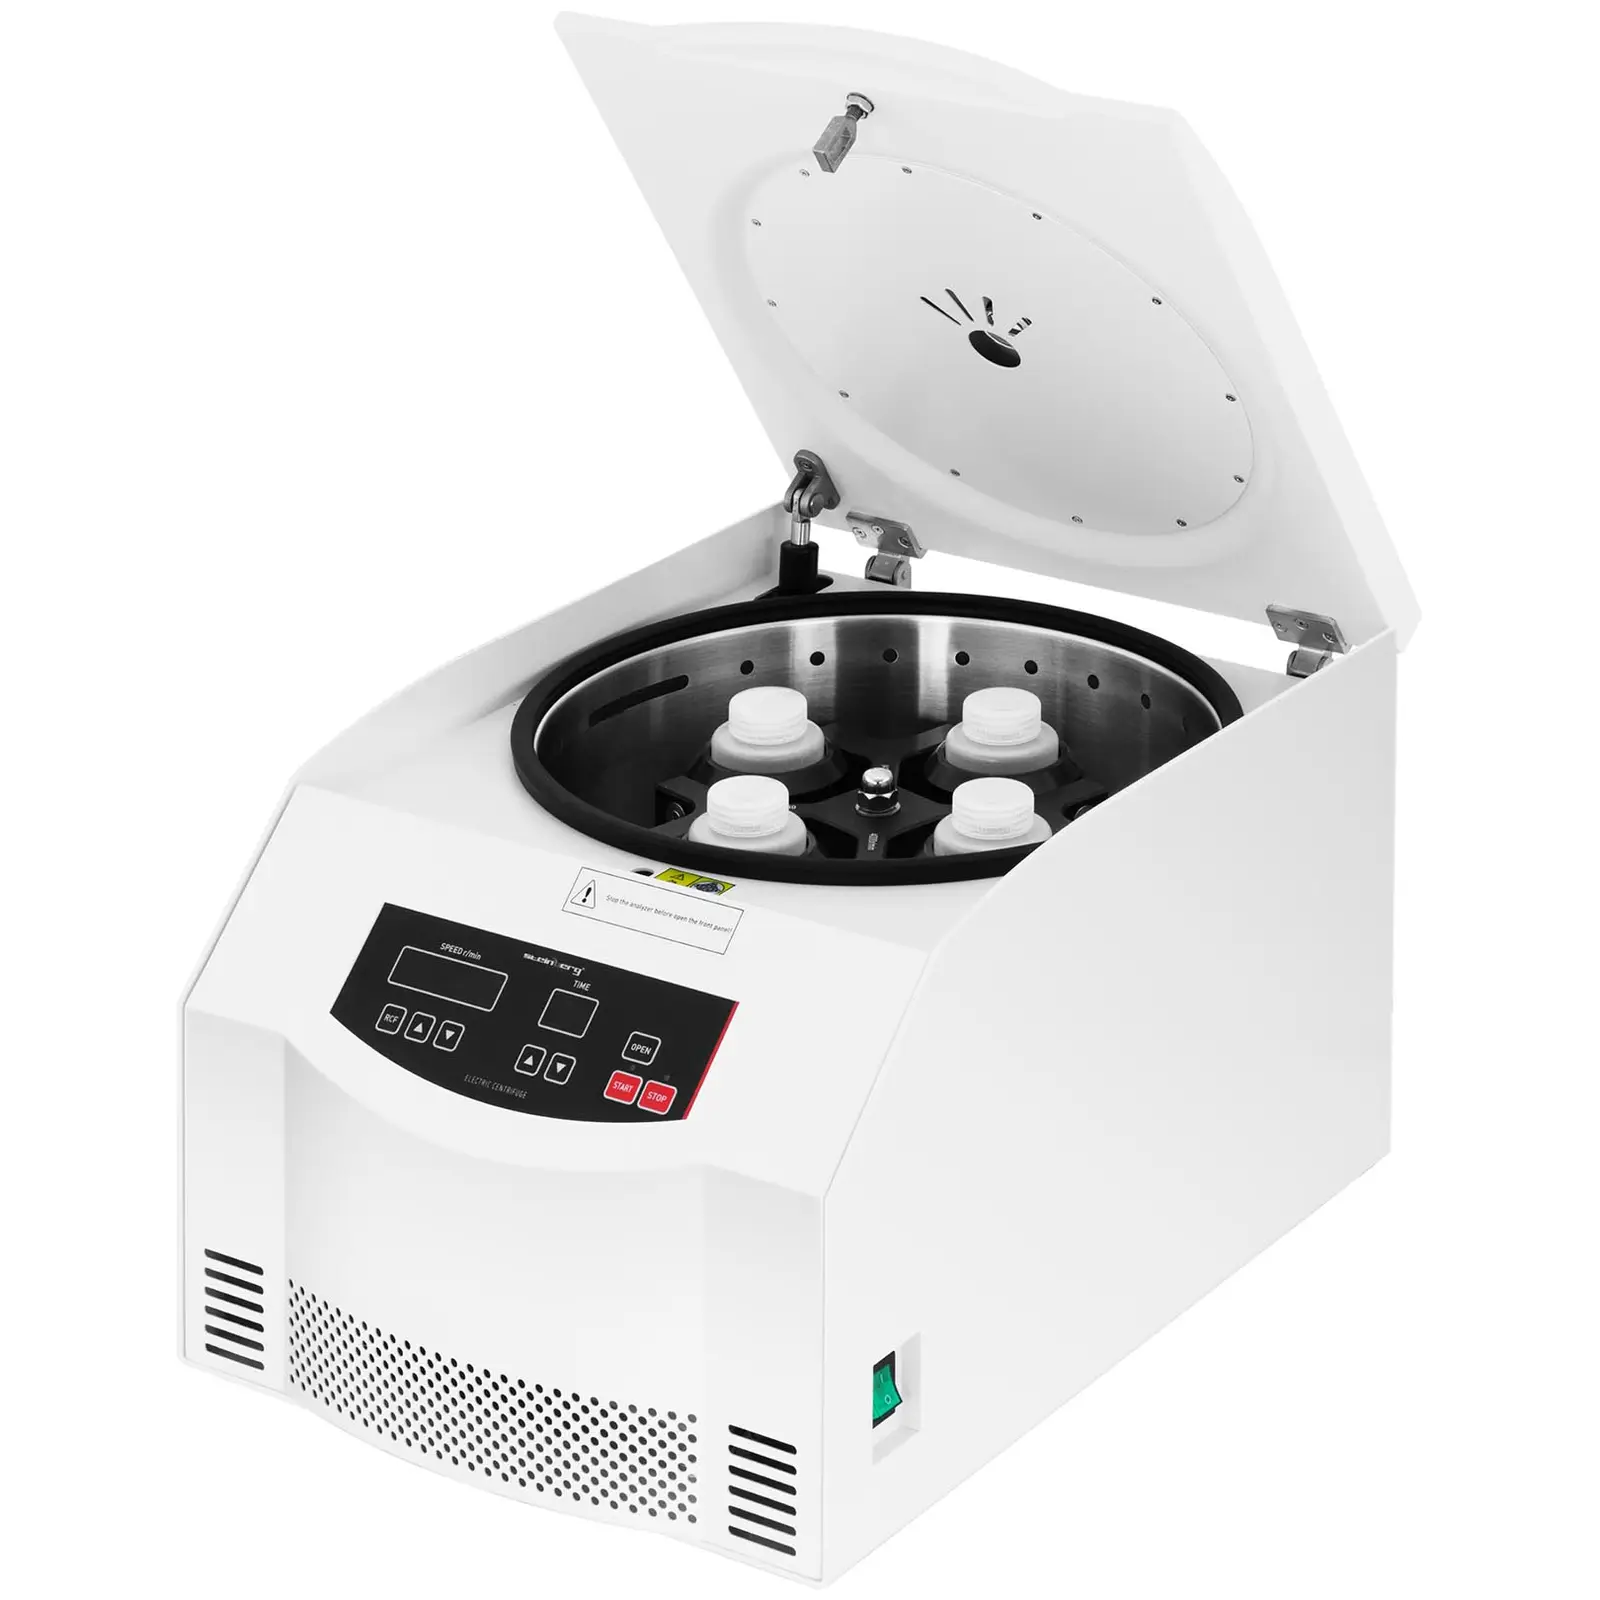 Asztali centrifuga készlet - 4 x 250 ml - RCF 4420 xg 32 x 10 ml-es lengőrotorral és 8 db 10–5 ml-es adapterrel